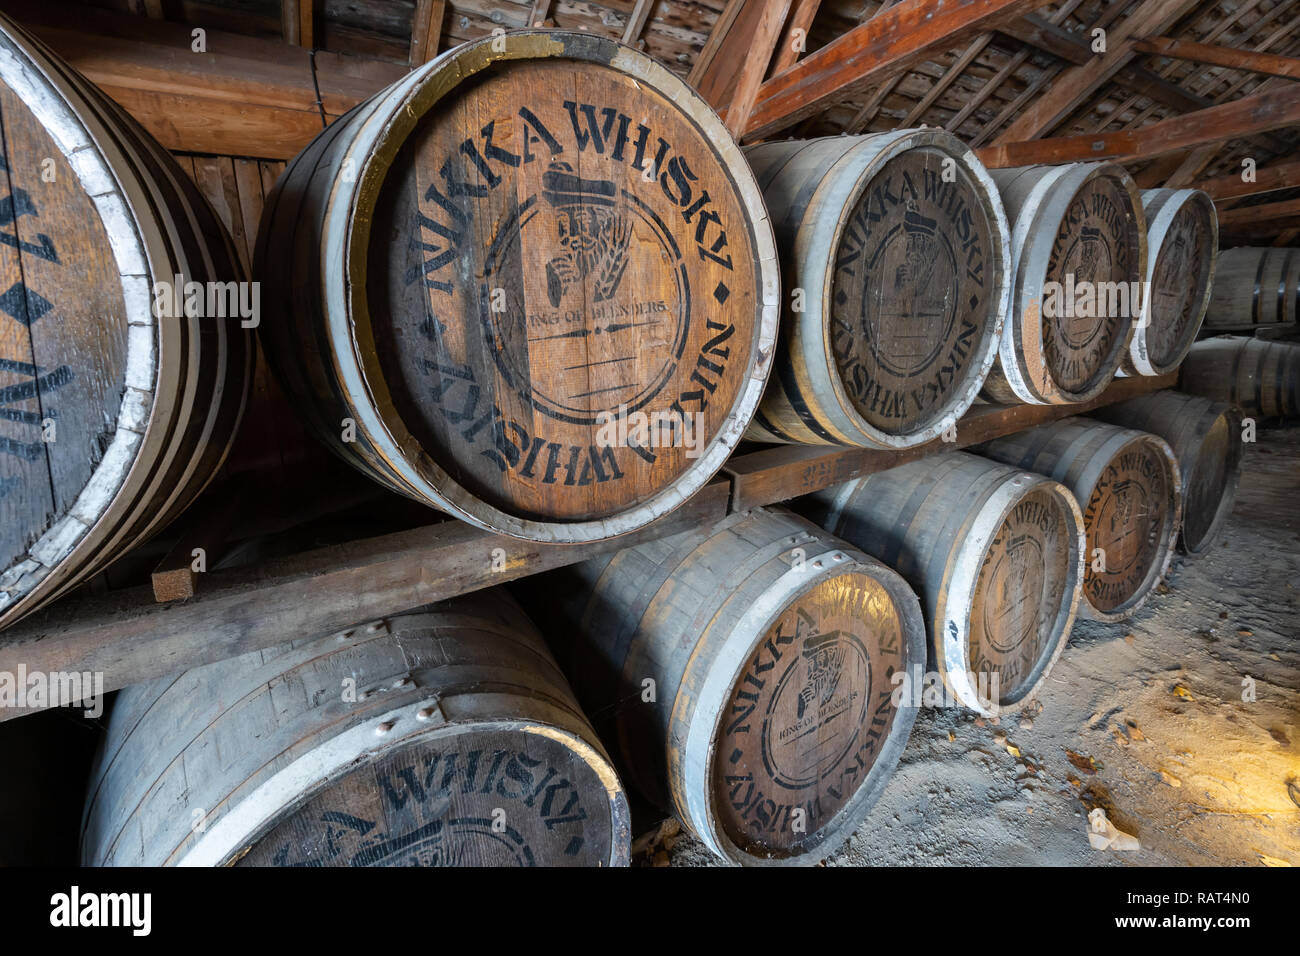 La distillerie de whisky Nikka Yoichi à Hokkaido, Japon Banque D'Images